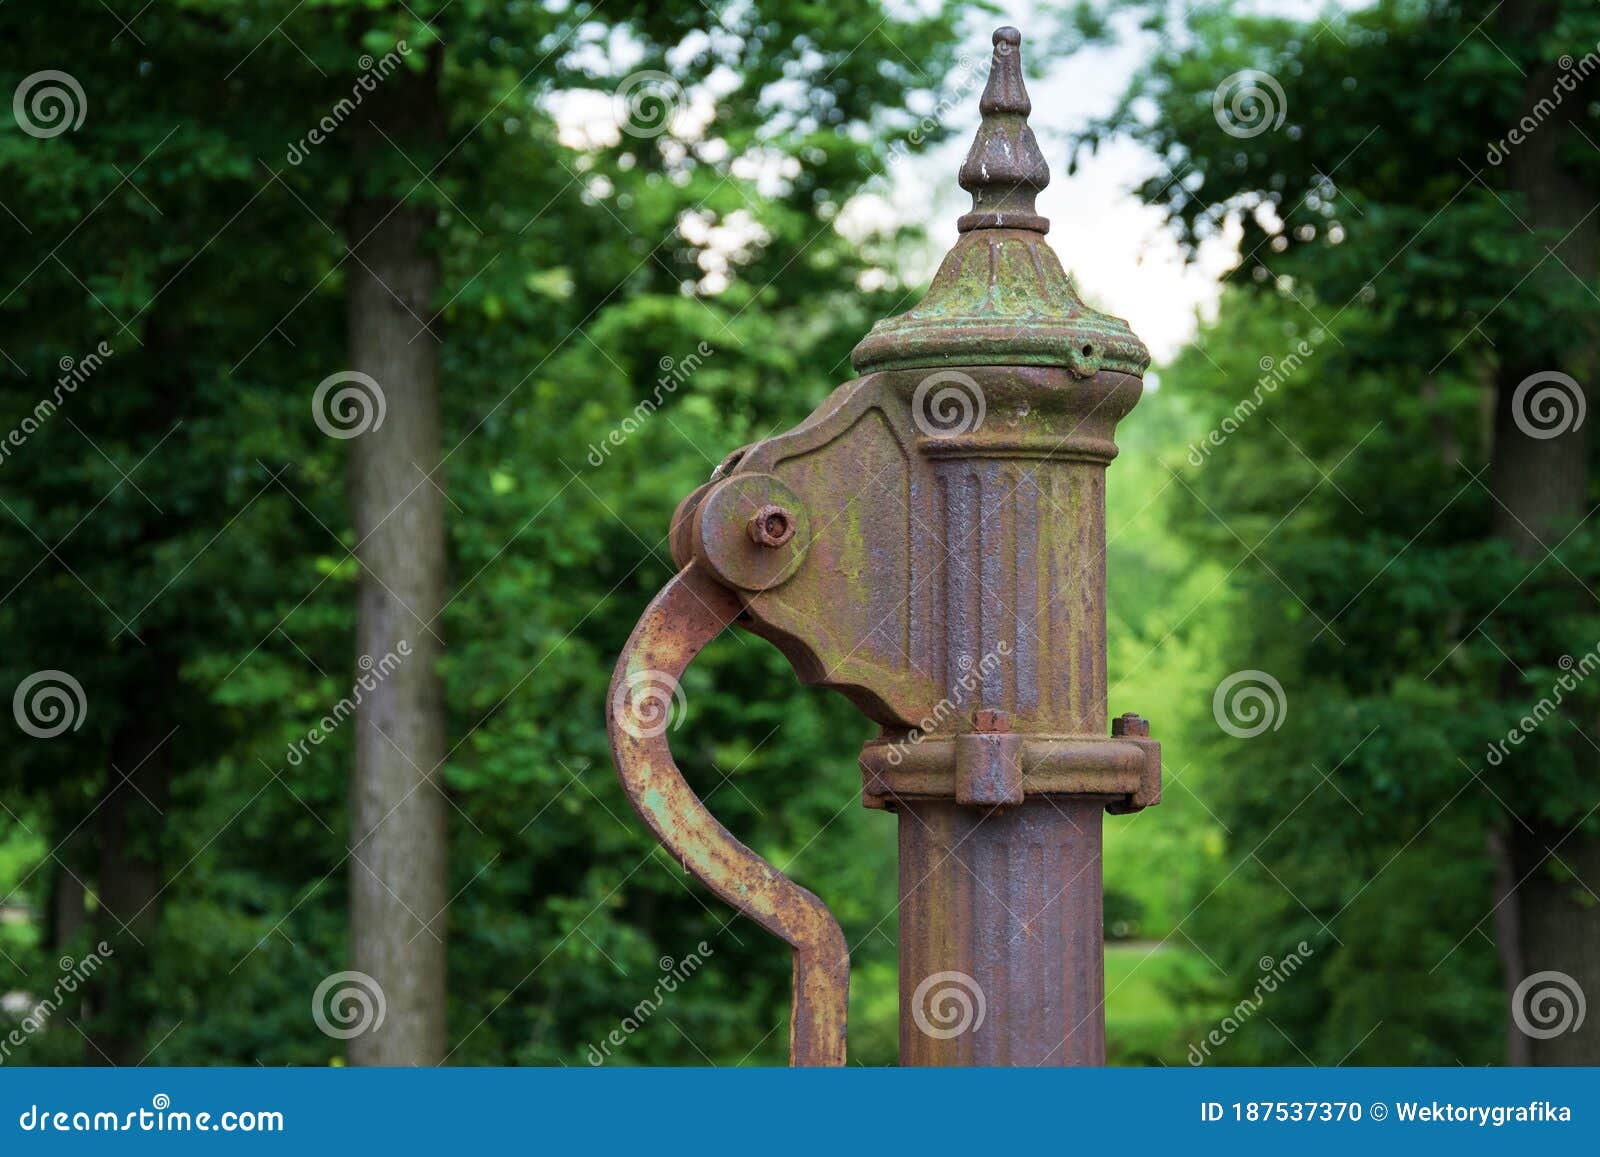 Handwasserpumpe. Alte Manuelle Pumpe Gut Im Park. Foto Des Alten Stils  Wohlen Objekts. Alter Antiker Metallmechanismus Stockfoto - Bild von  geschöpf, erneuern: 187537370